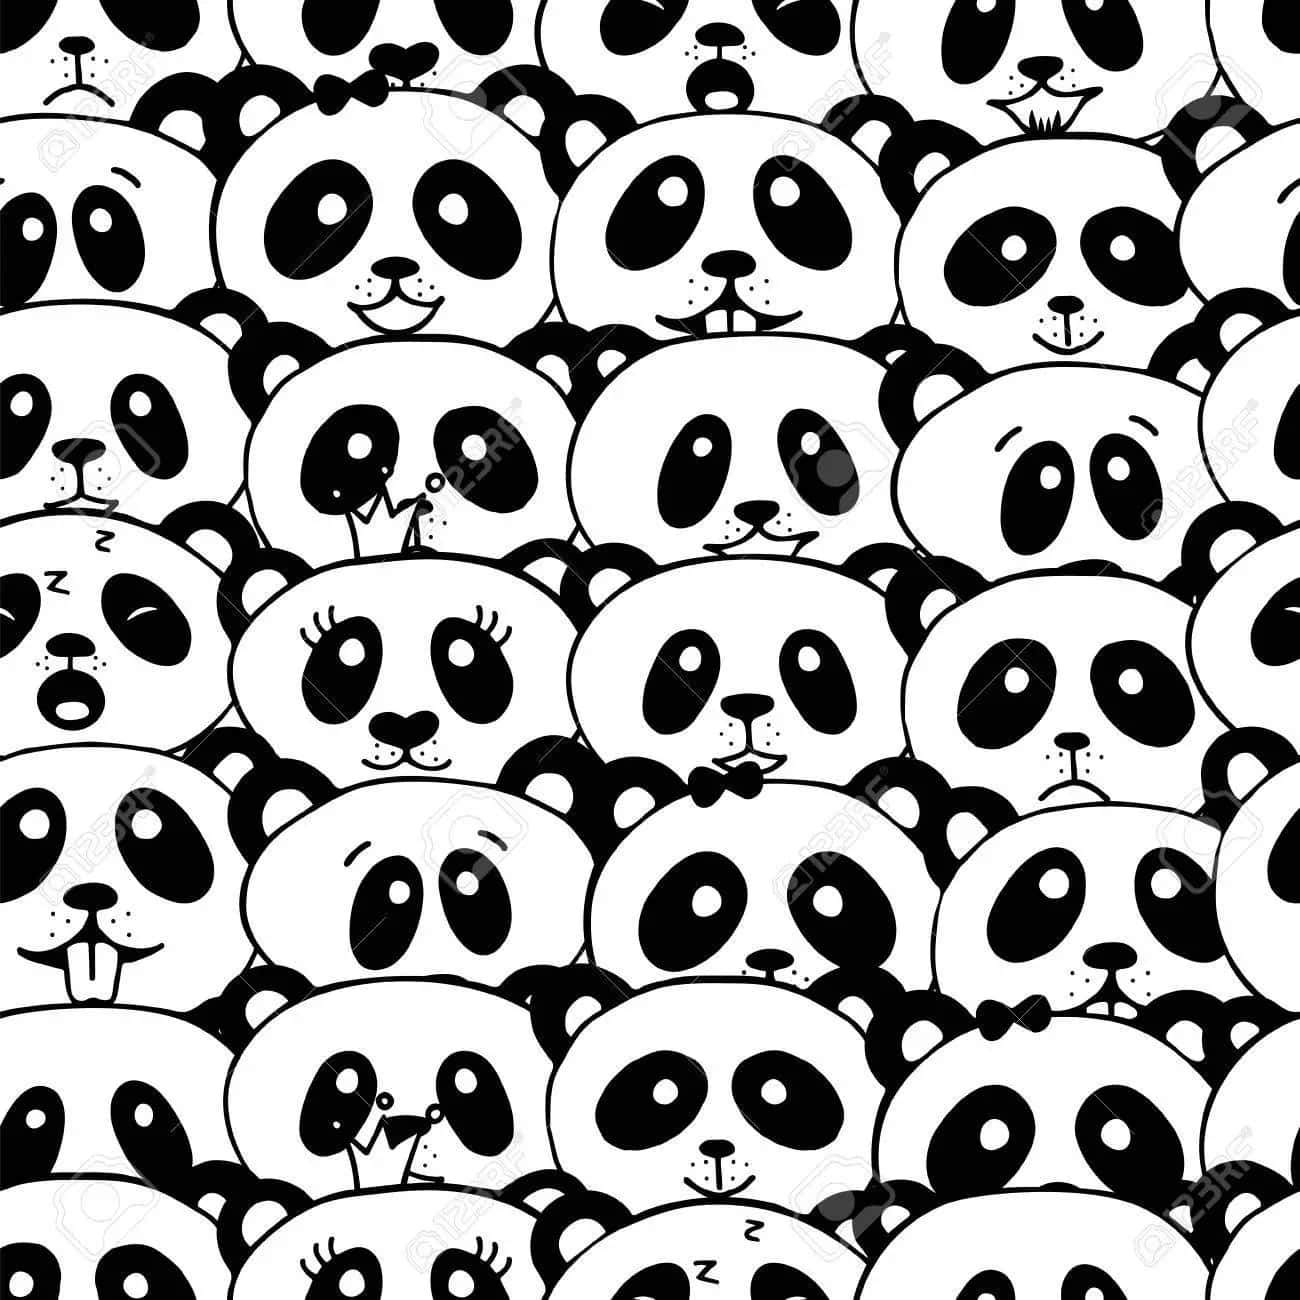 Collagede Cabezas De Pandas Femeninos Fondo de pantalla